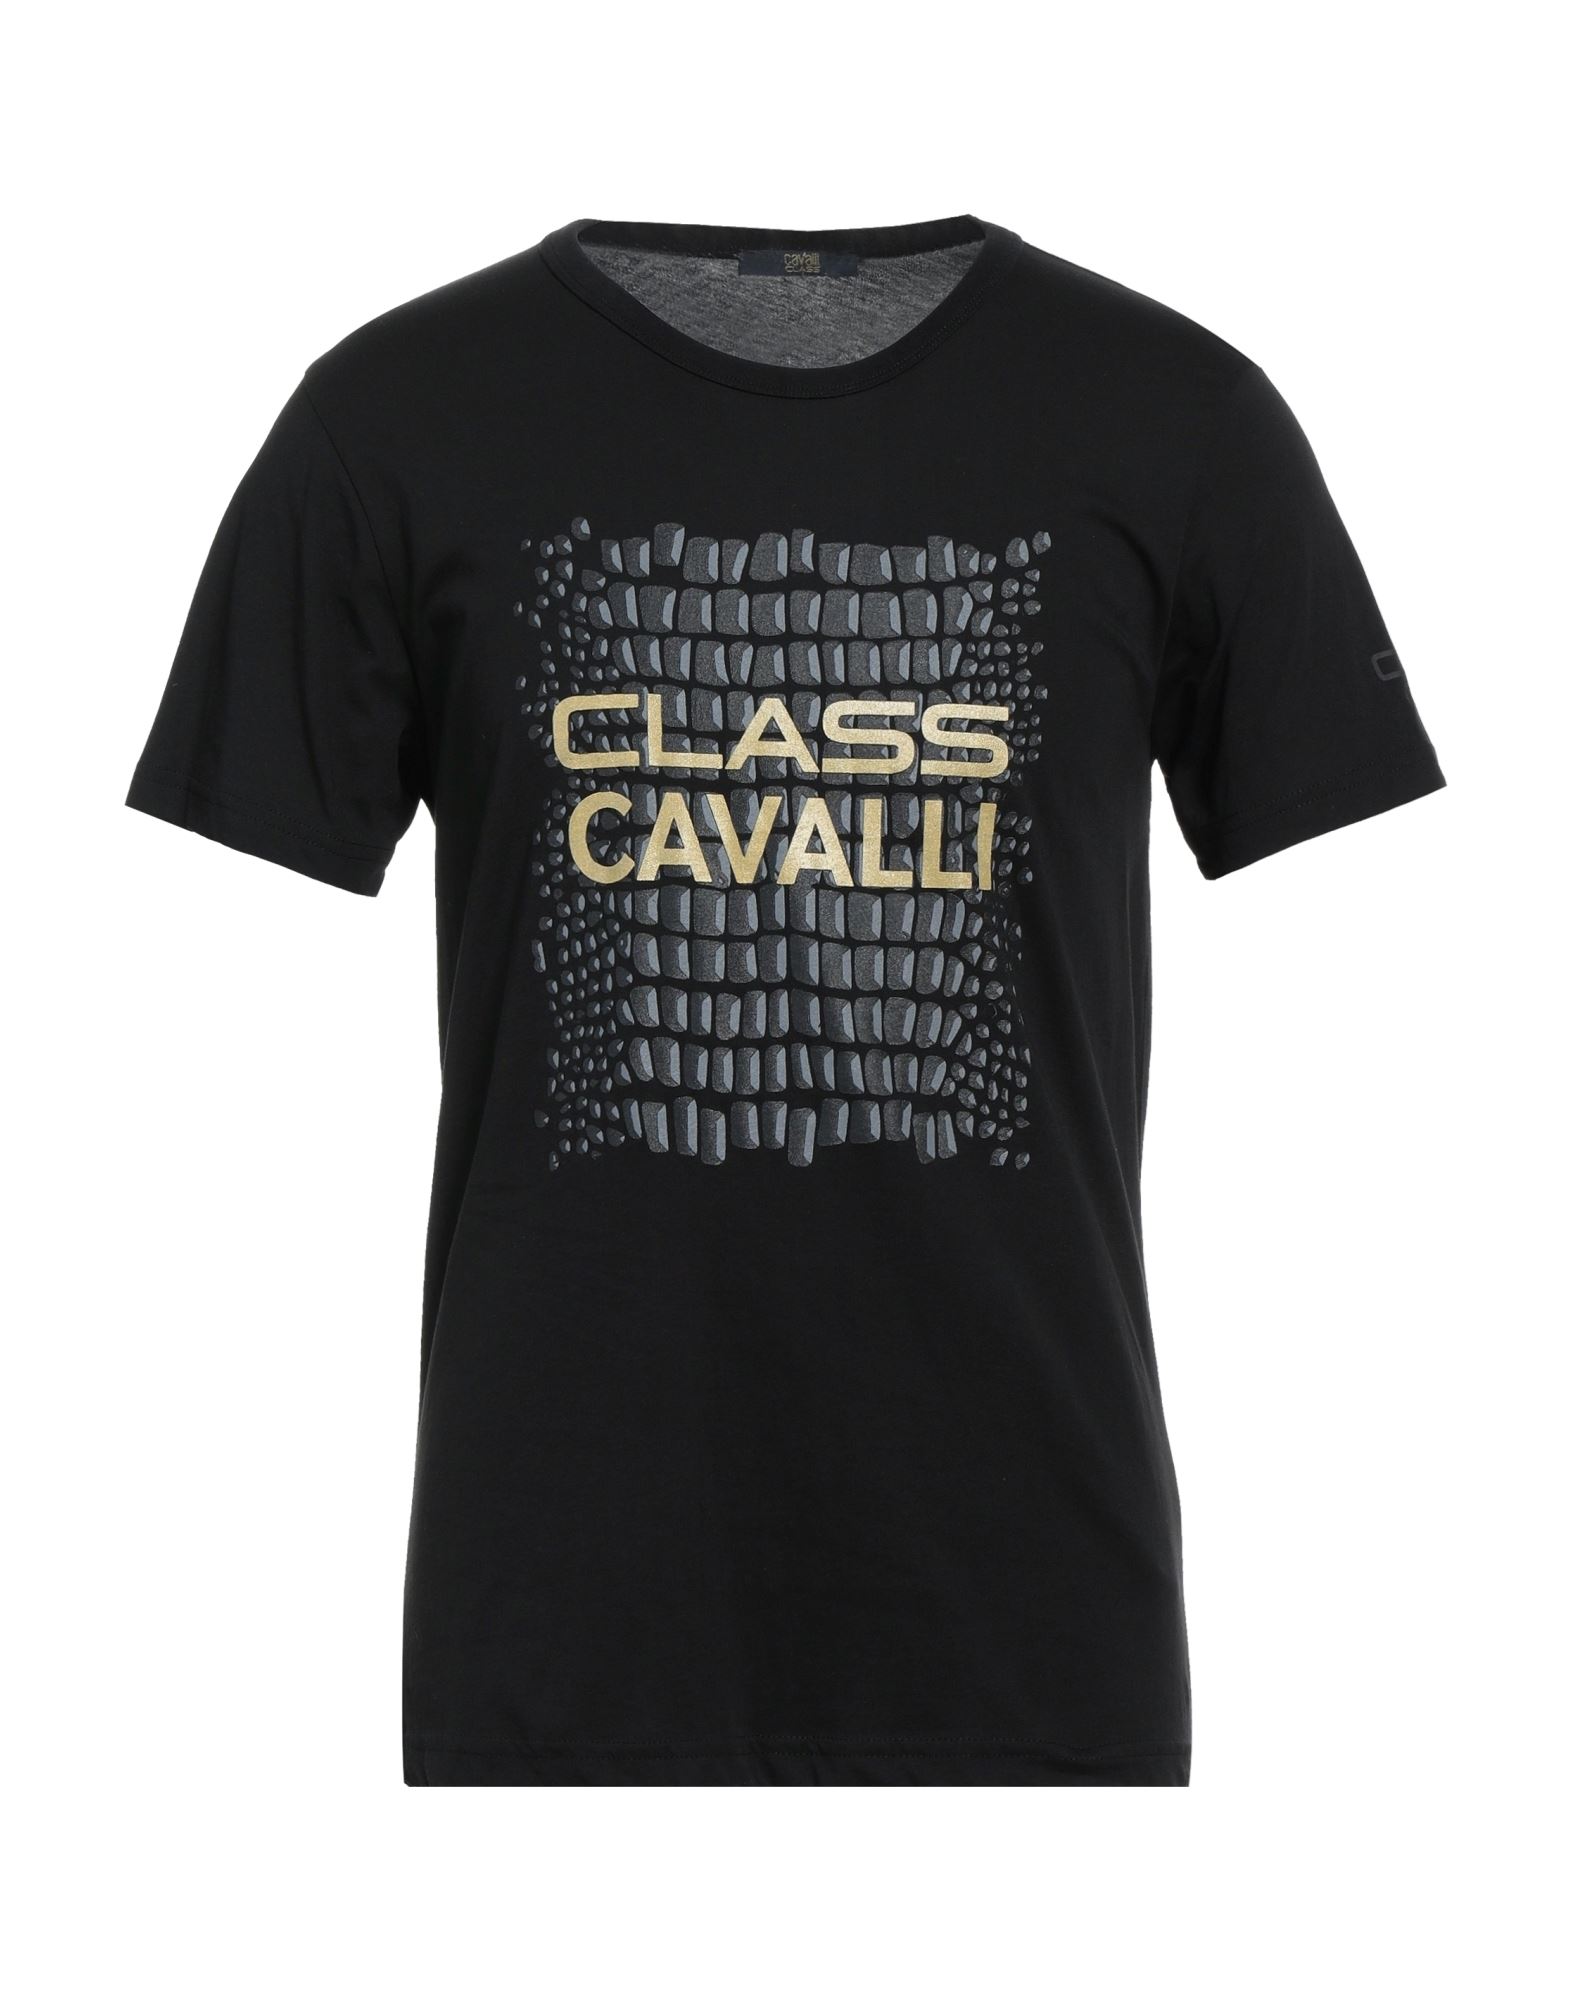 Cavalli Class T-shirts In Black